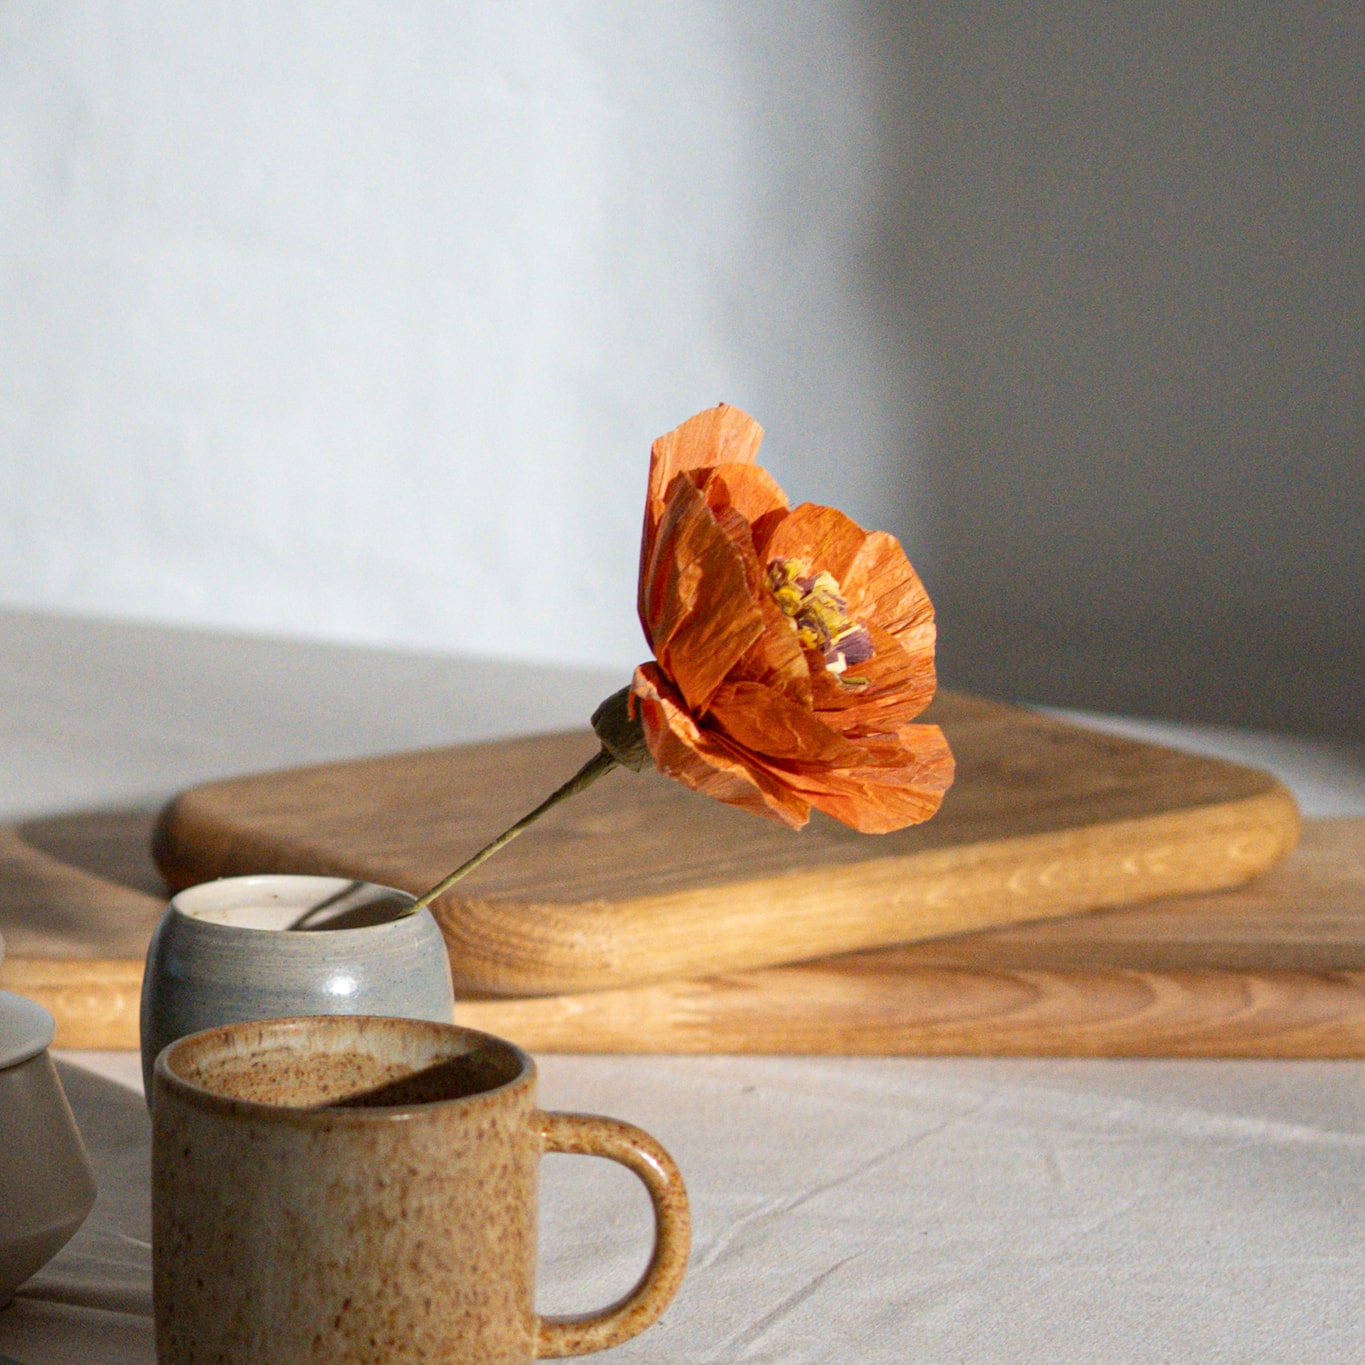 Billede af krus, vase med orange blomst og 2 tapasbræt i baggrunden